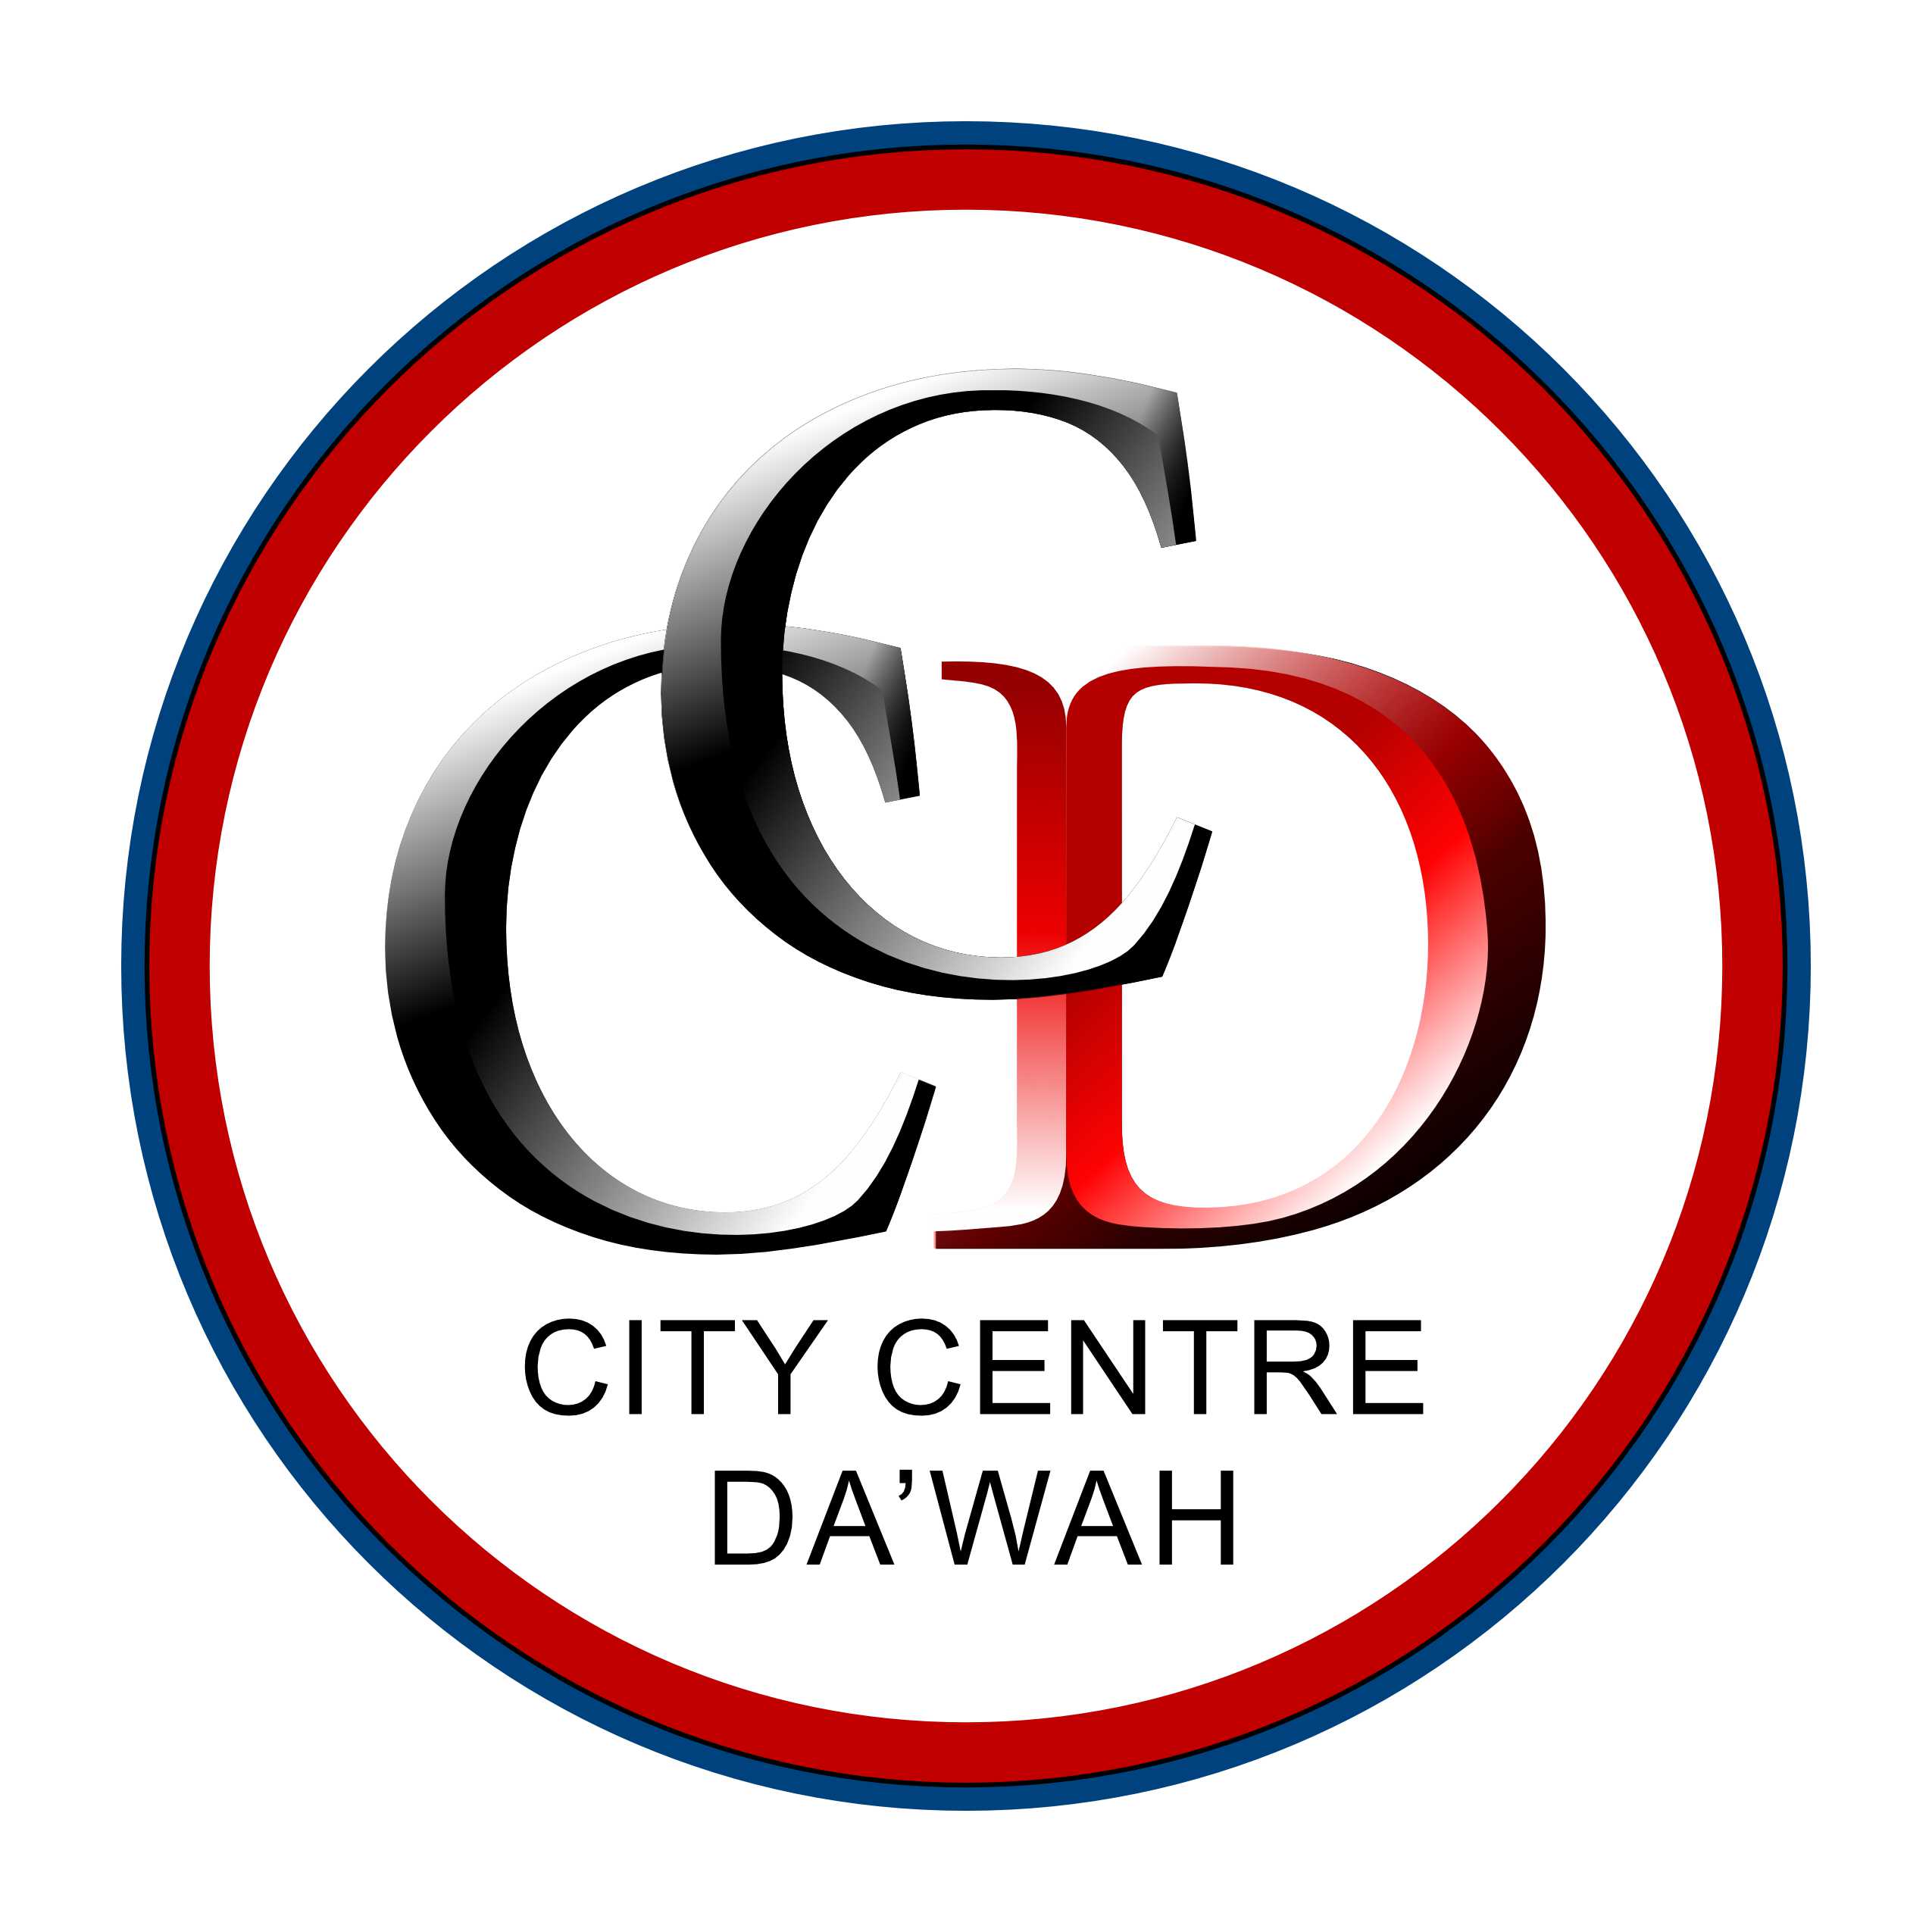 City Centre Da'wah logo